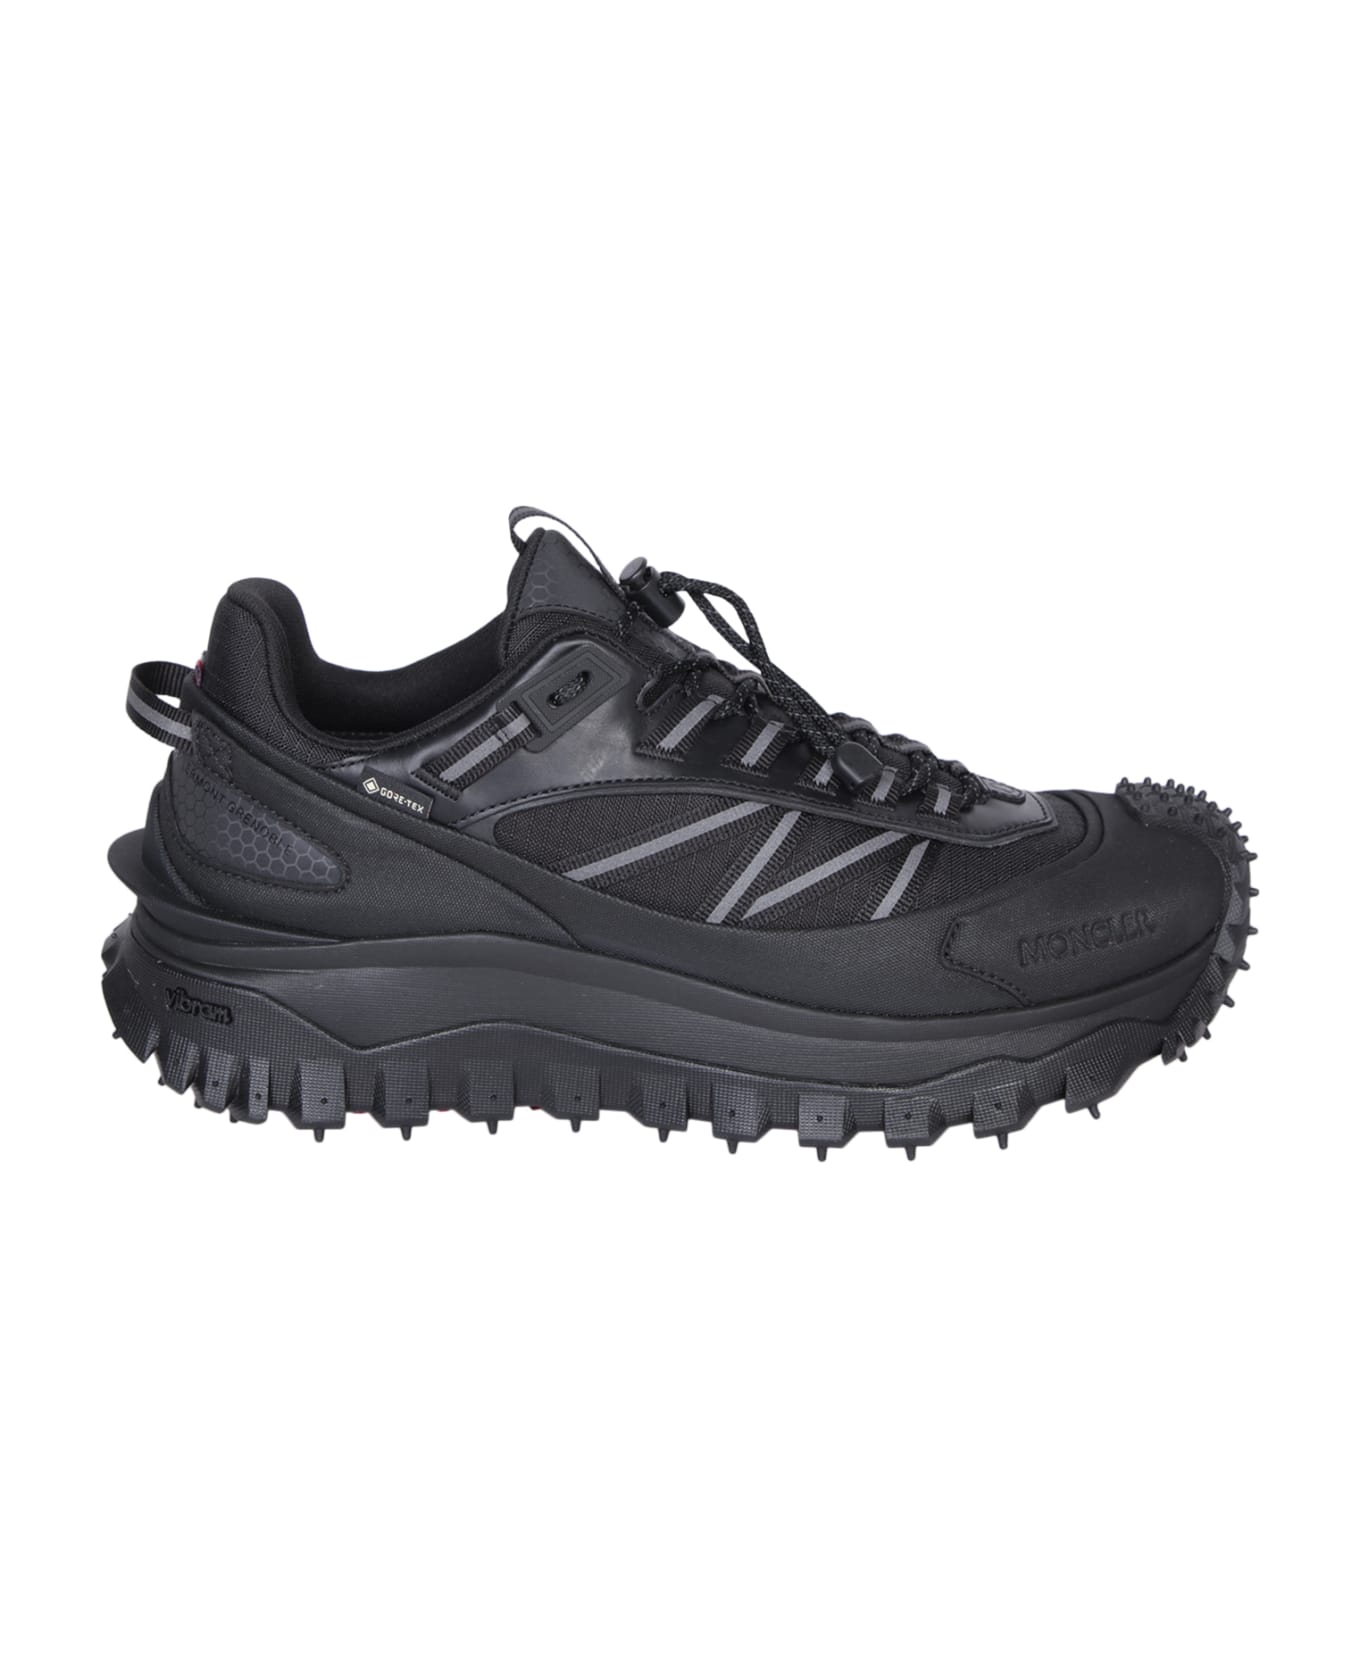 Moncler 'trailgrip Gtx' Sneakers - Black スニーカー